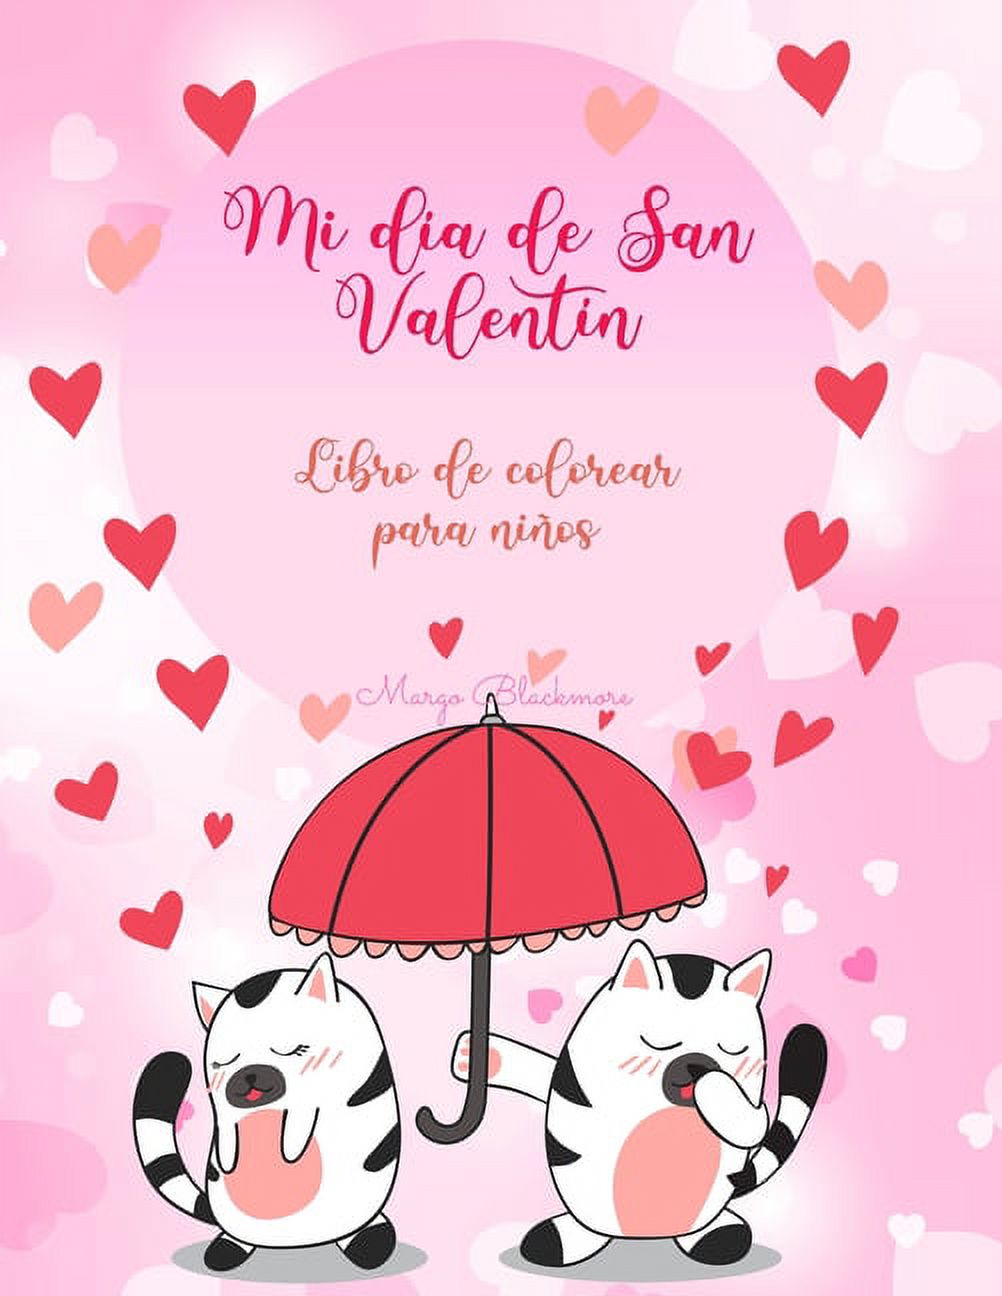 Mi día de San Valentín Libro de colorear para niños : El amor está en el aire en el reino animal // Más de 90 ilustraciones de lo que es el amor en el reino animal, adecuadas para niños de 4 a 8 años. (Paperback) - image 1 of 1